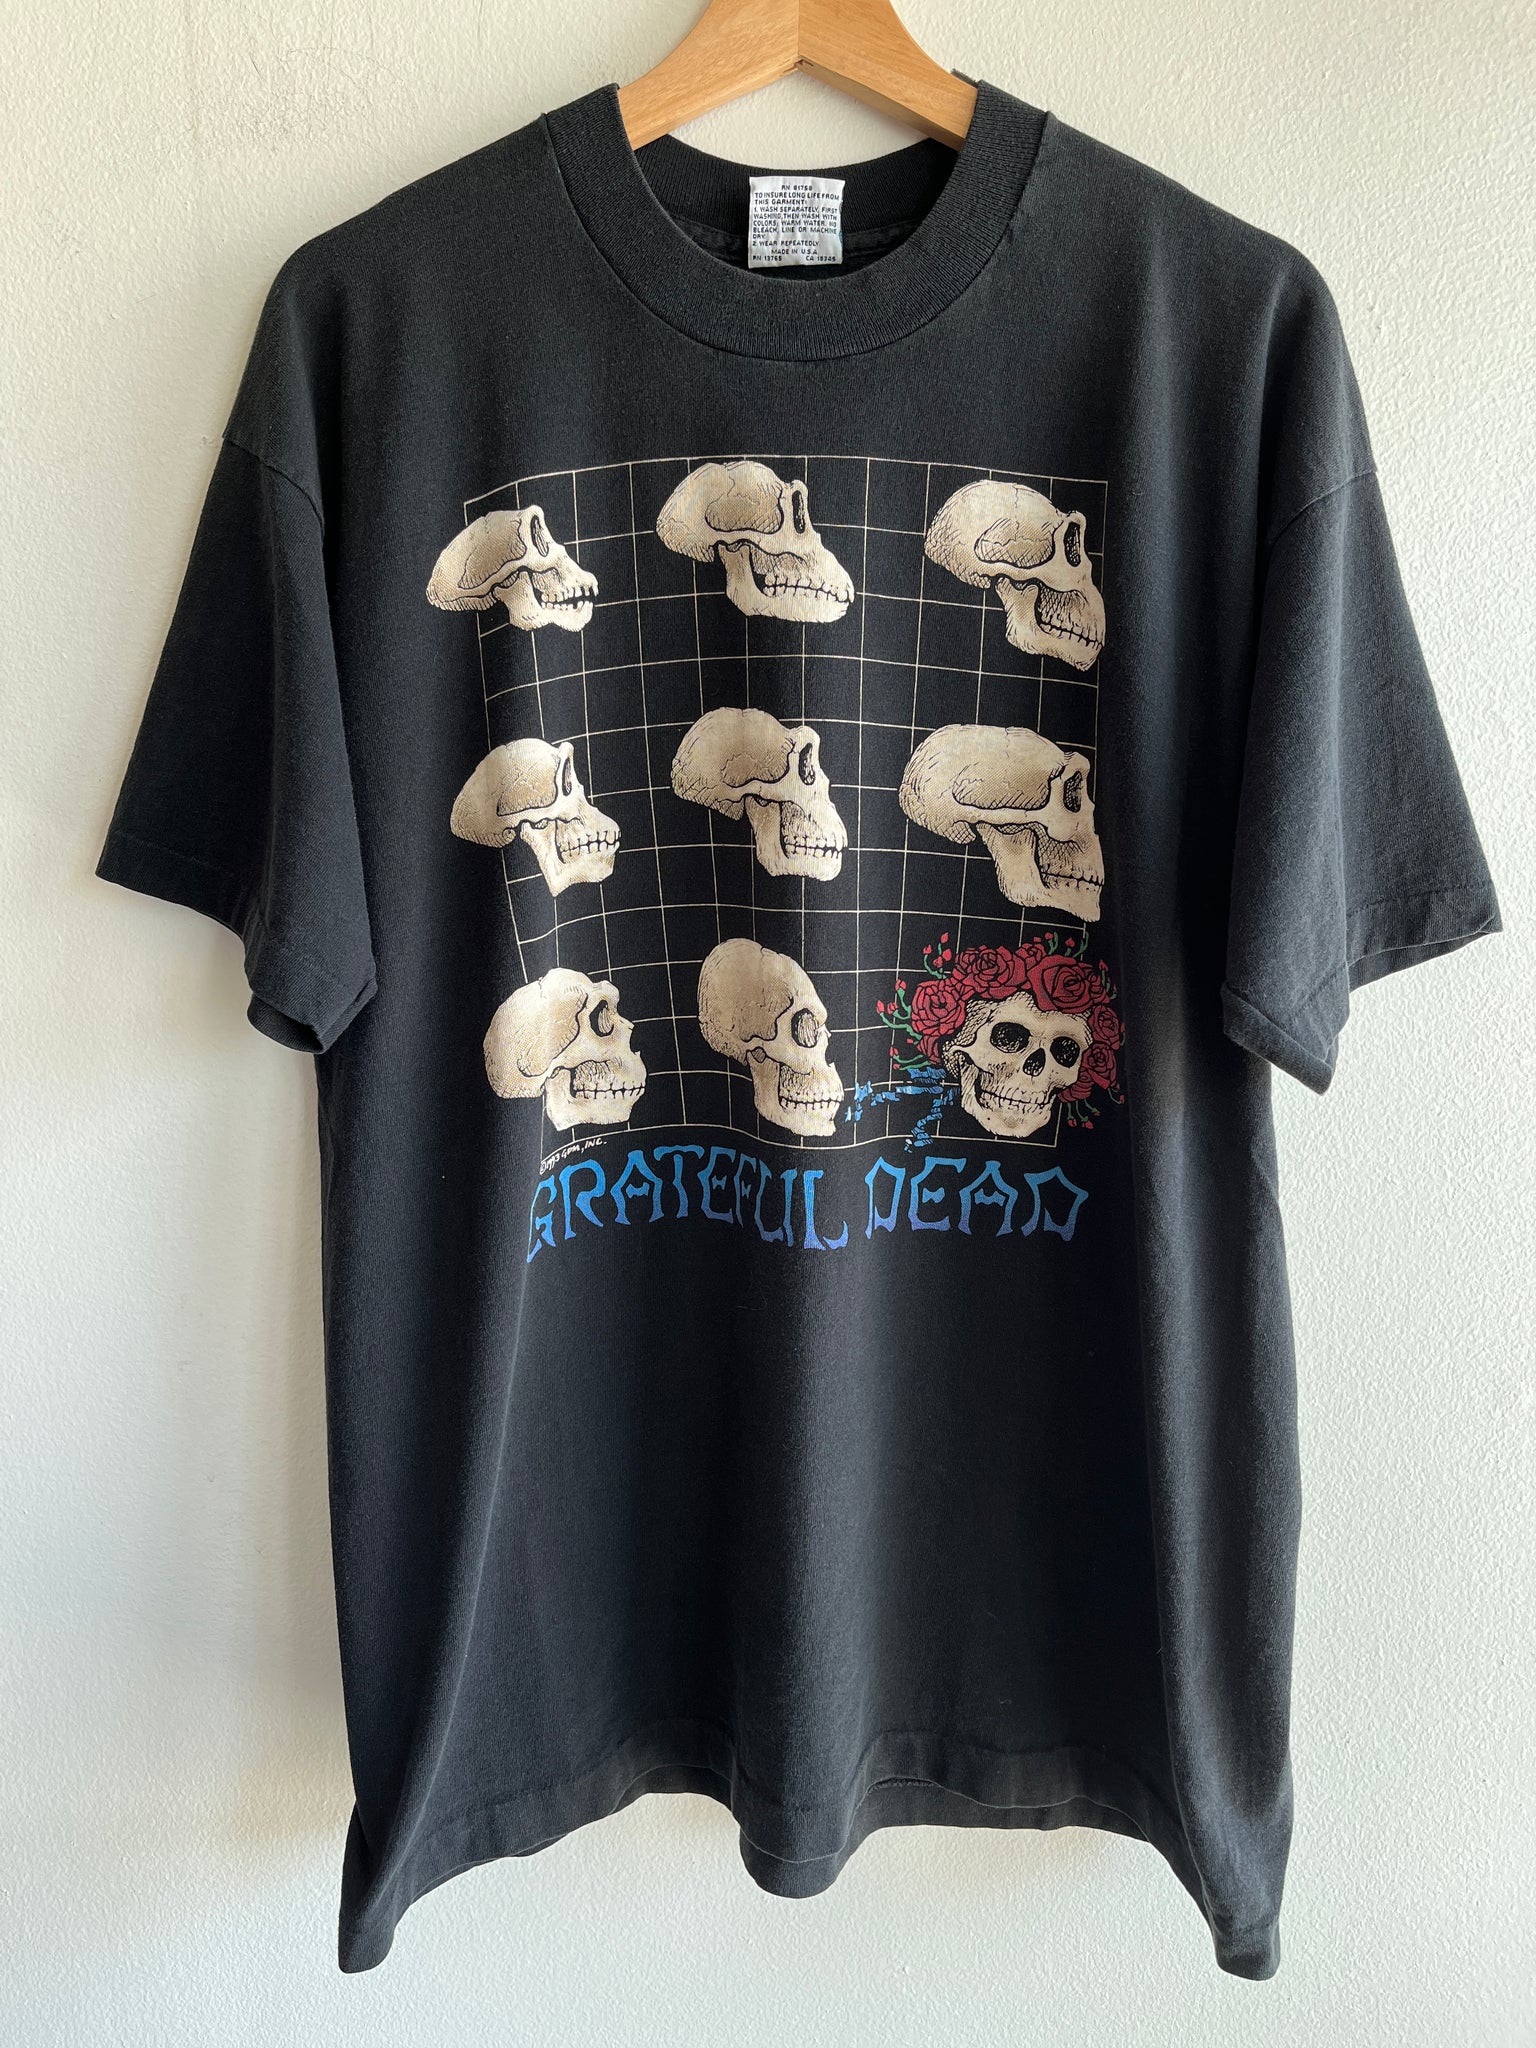 Vintage 1993 Grateful Dead “Evolution” T-Shirt